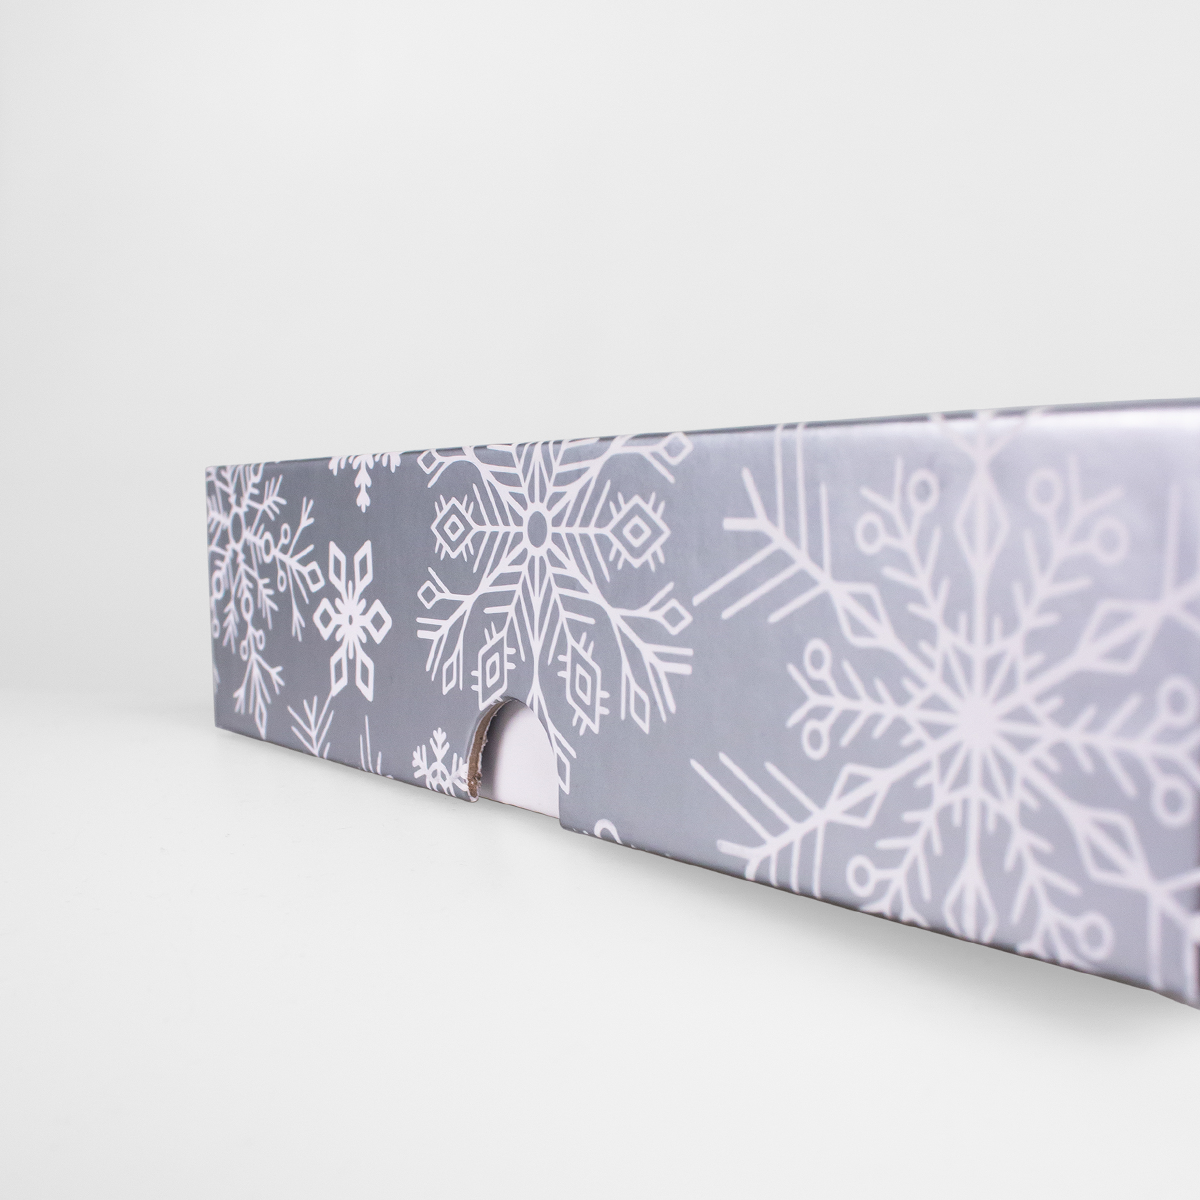 Подарочная коробка крышка-дно, 21.5 x 10.5 x 5 см. "Снежинки", серебряный, белый